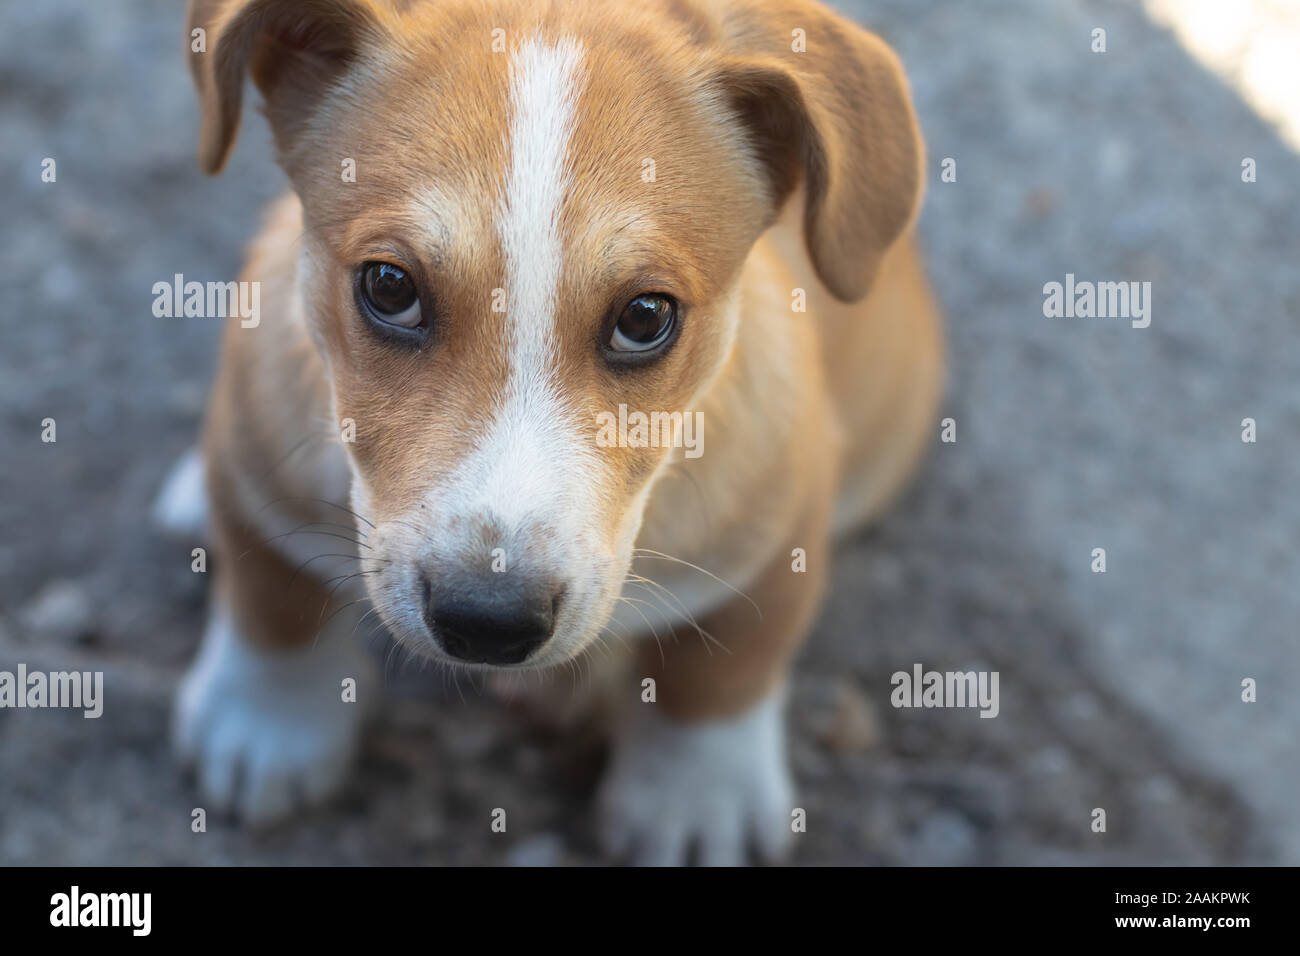 Ein Süßer Kleiner Hund Mit Großen Ohren, Die Aus Einem Fenster Schauen  Stockbild - Bild von schauen, tier: 158885723